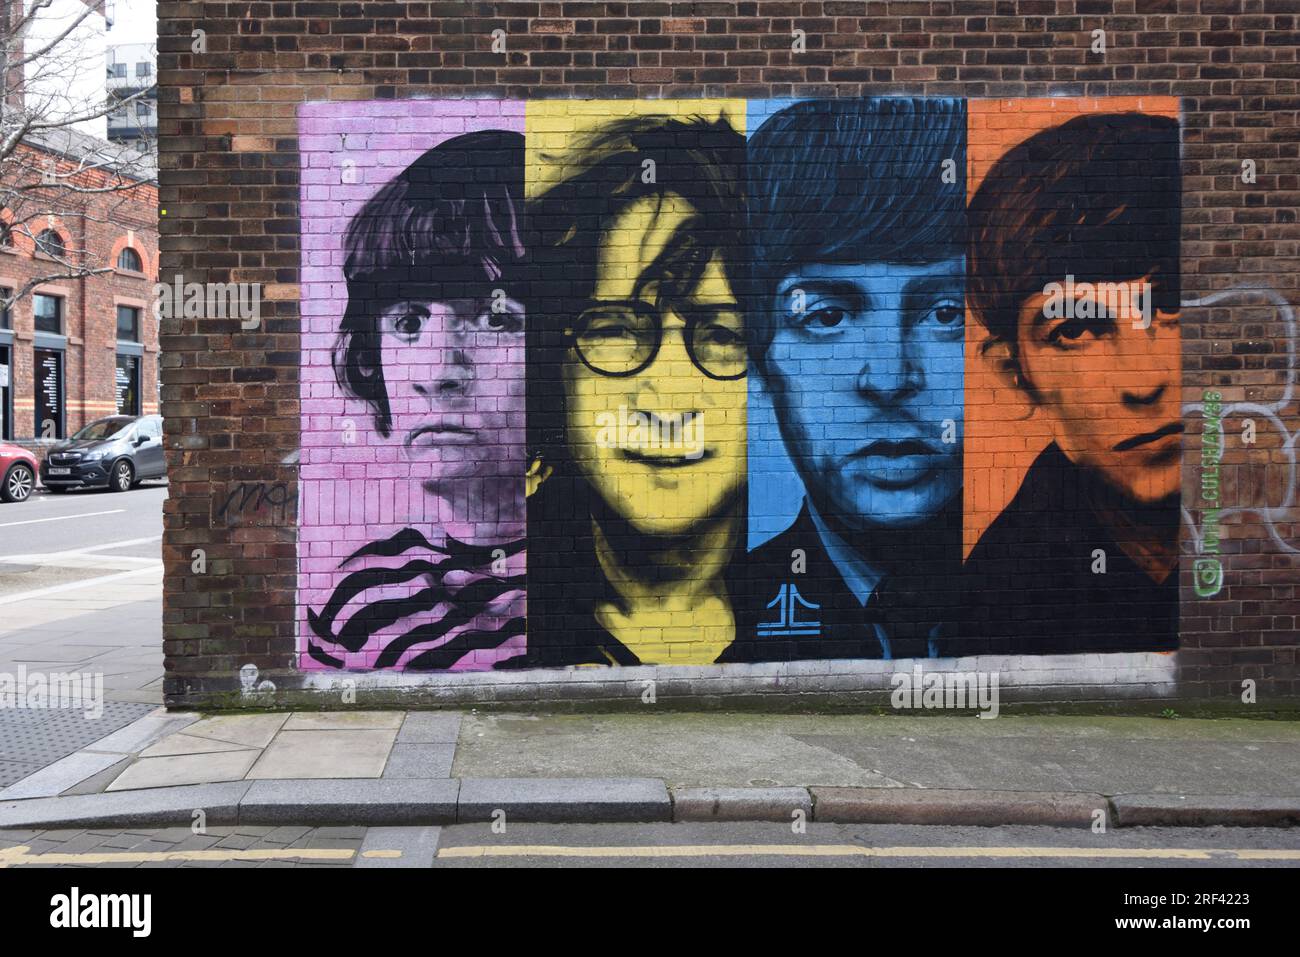 Ritratto o ritratti dei Fab Four del Beatles Pop Group Wall Painting o murale nel Baltic Triangle Liverpool Inghilterra Regno Unito Foto Stock